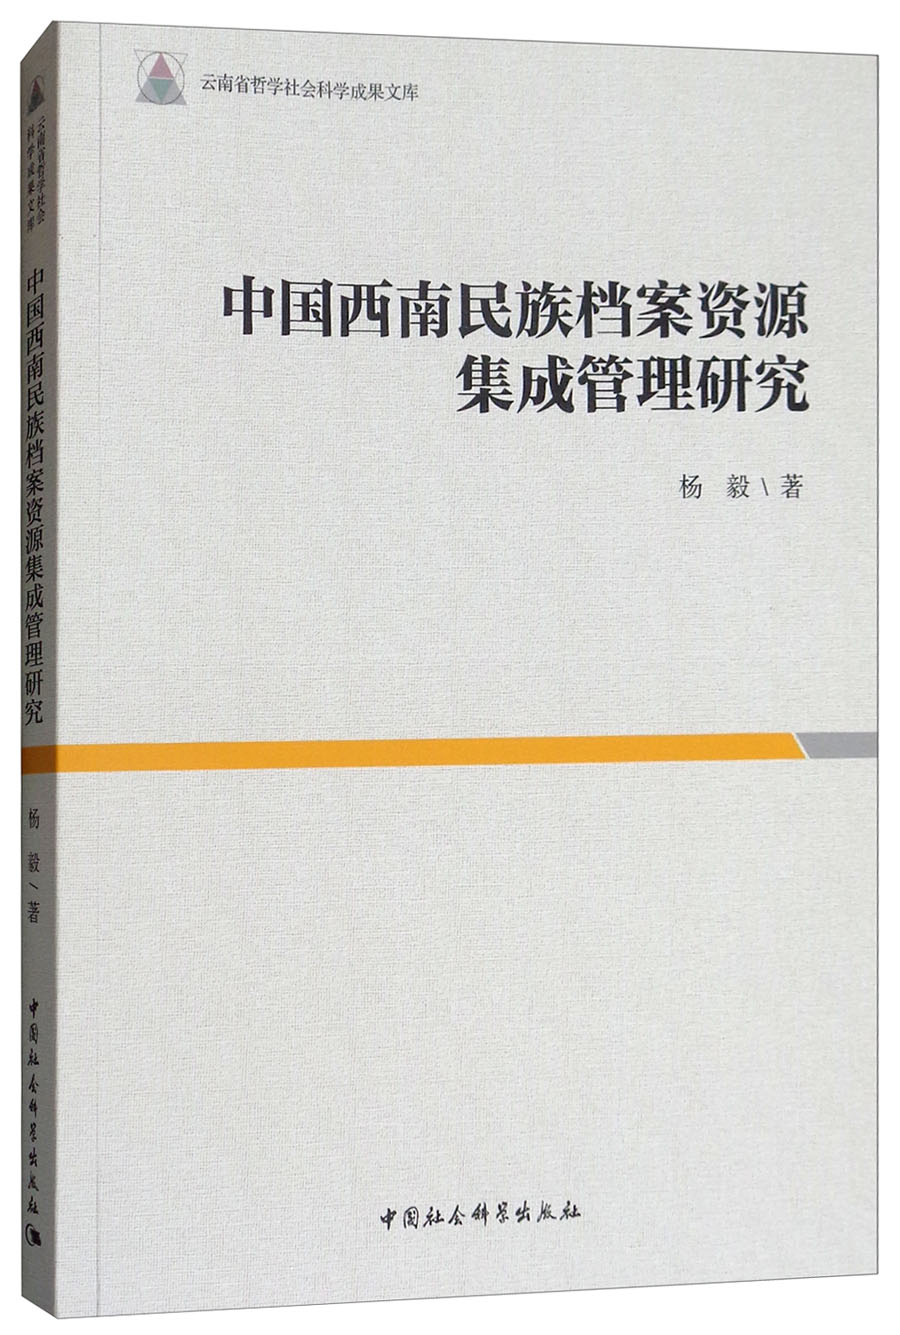 中国西南民族档案资源集成管理研究 中国社会科学 9787520320351 杨毅 epub格式下载